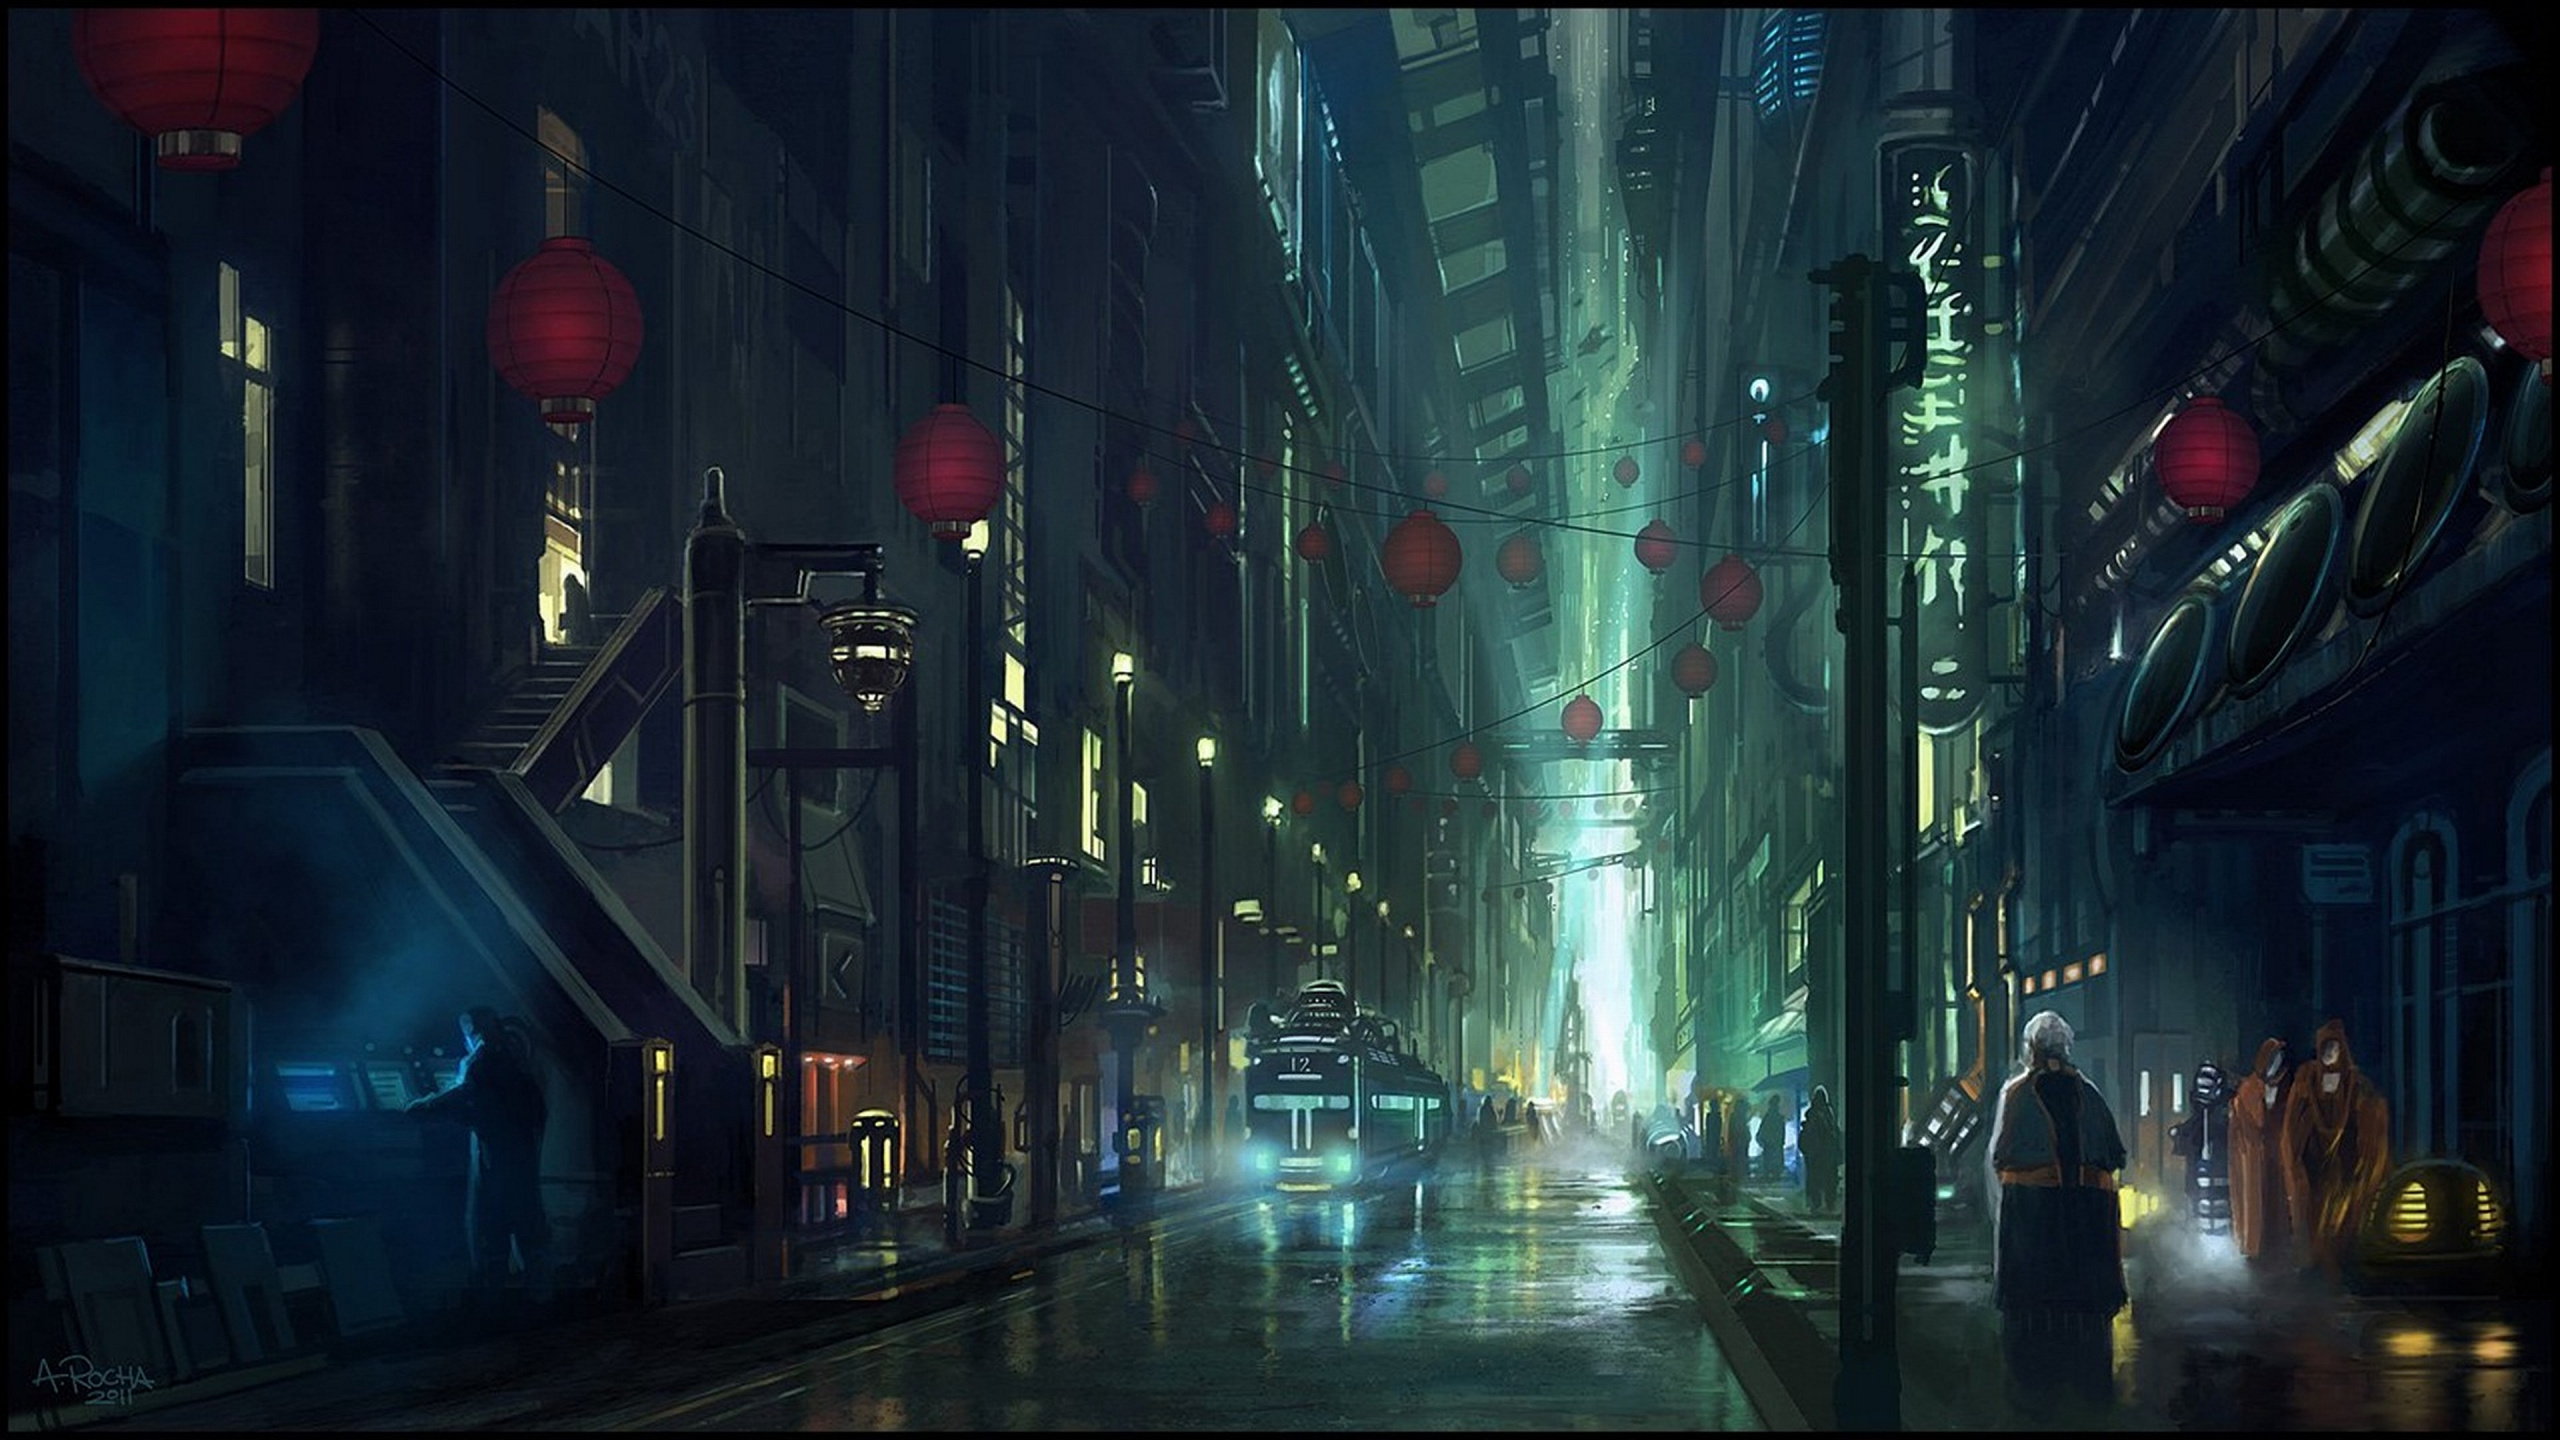 Gente Caminando en la Calle Durante la Noche. Wallpaper in 2560x1440 Resolution